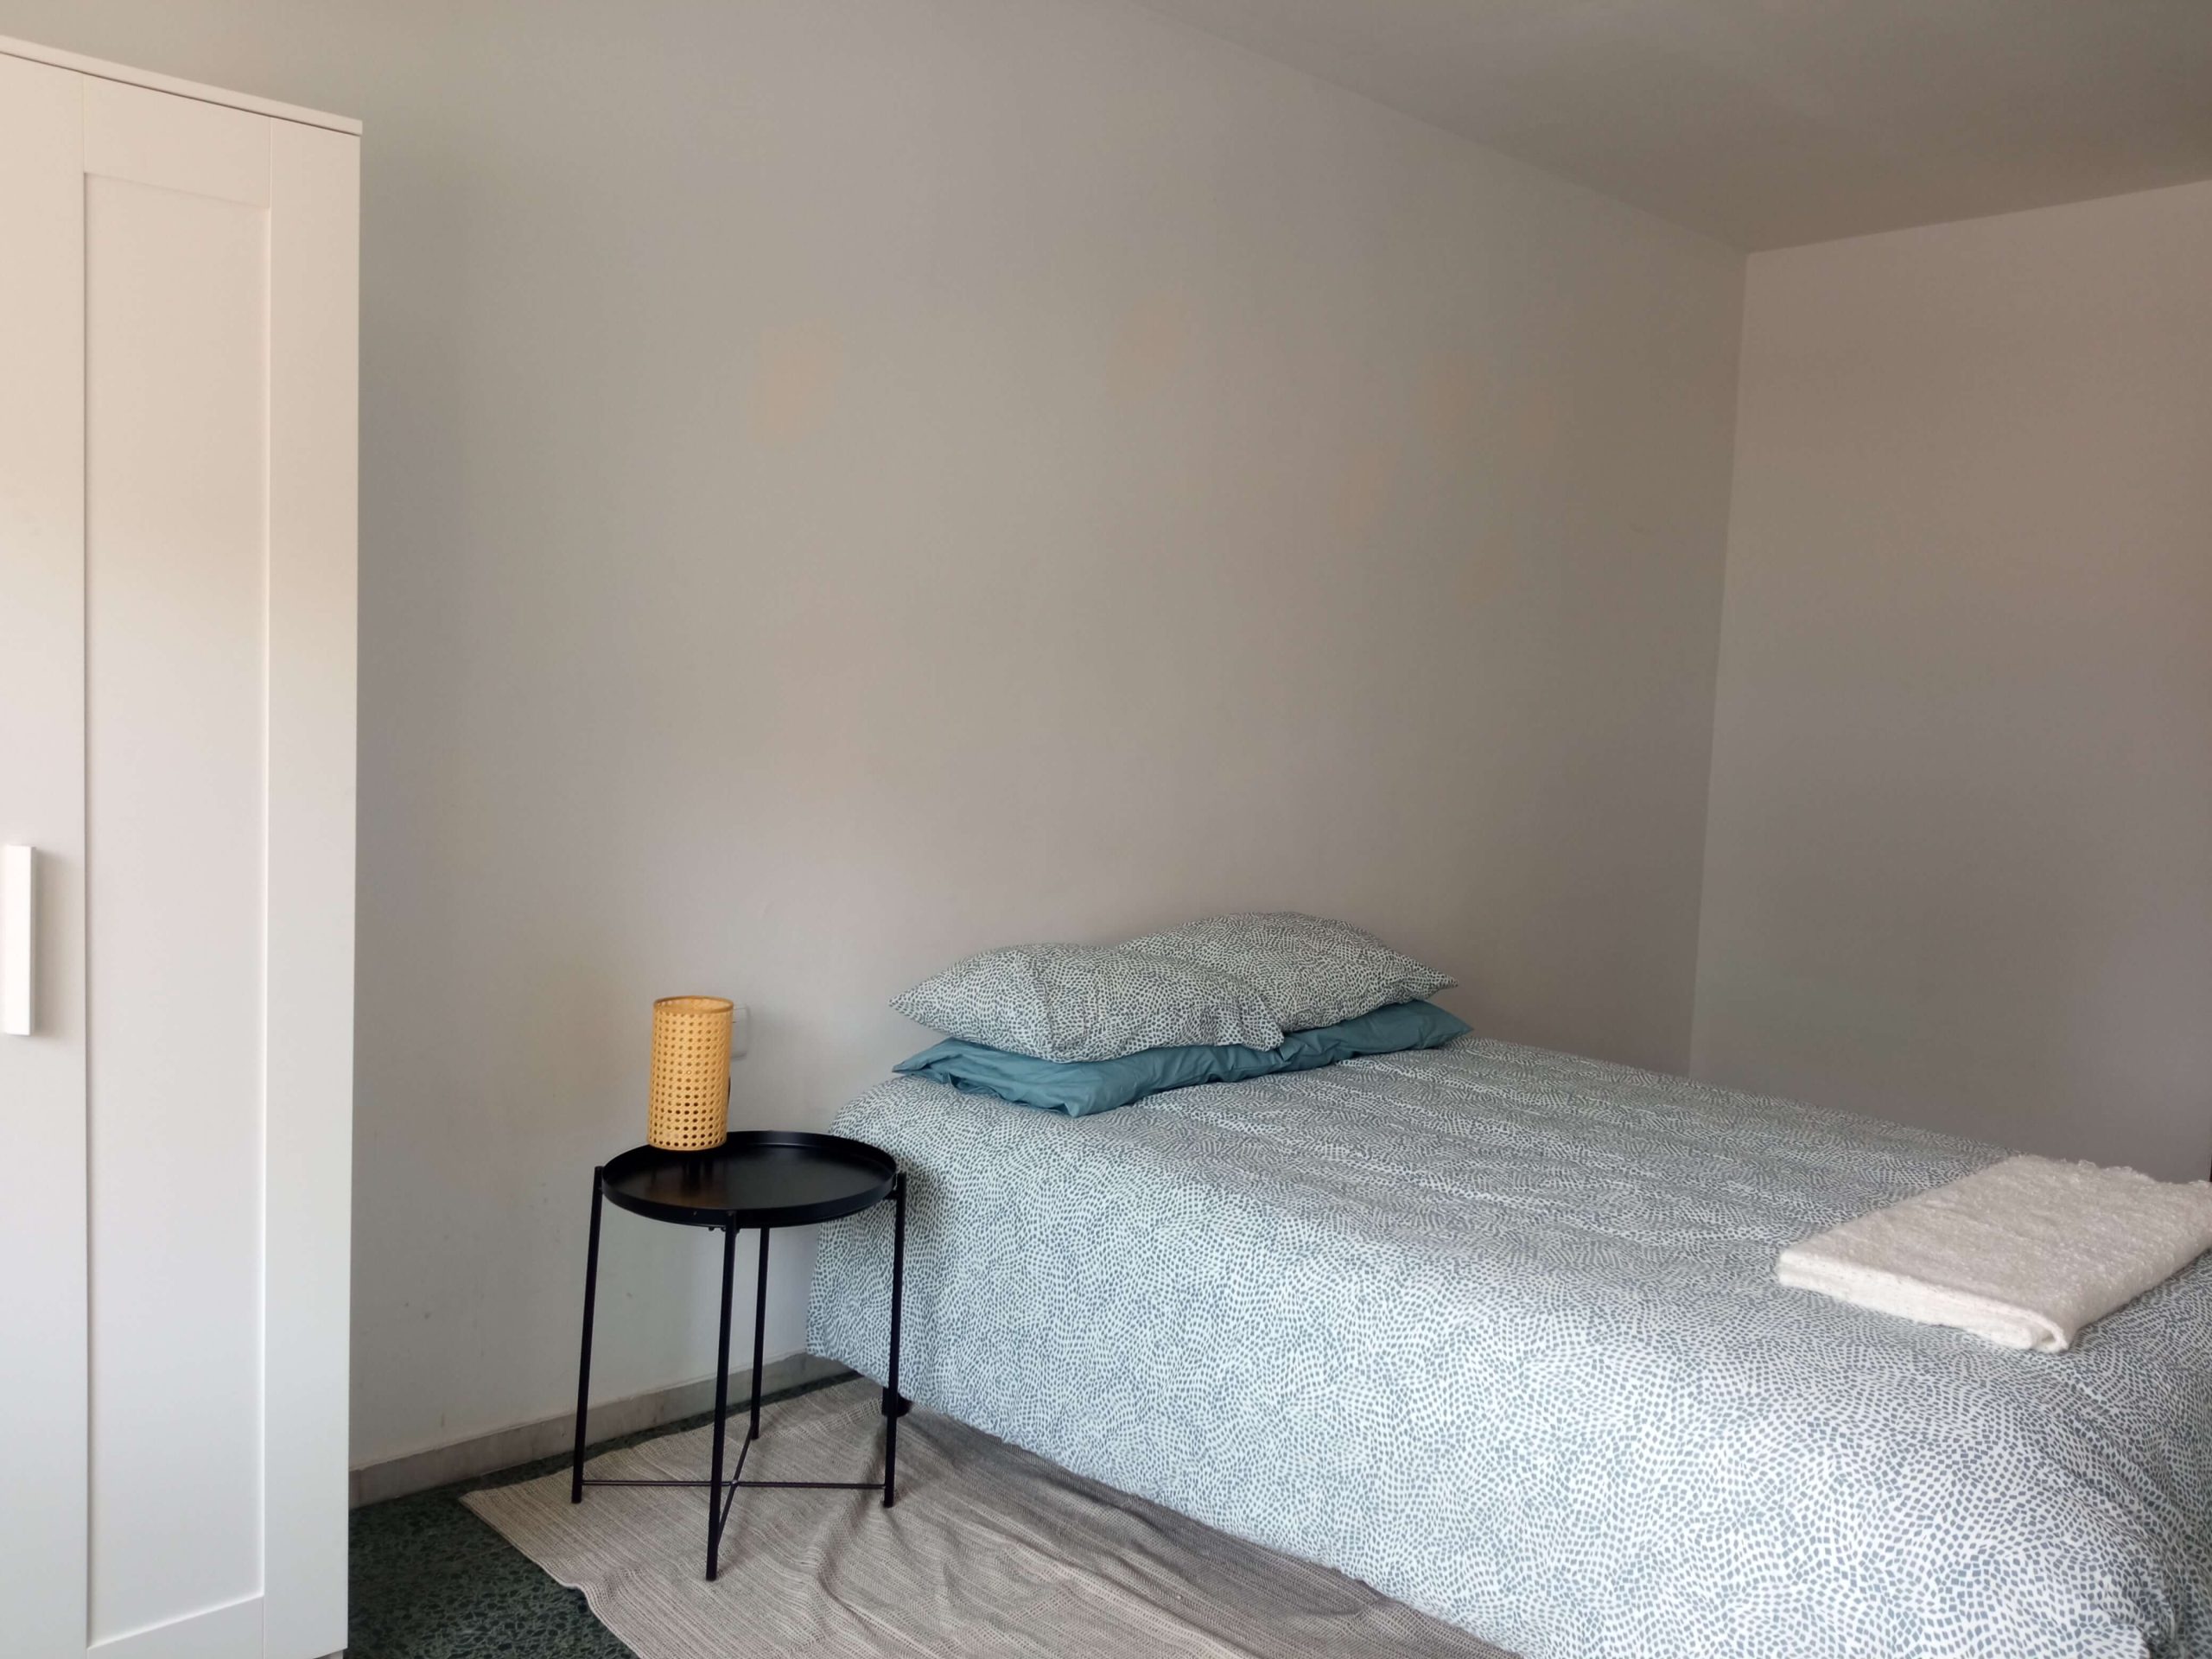 Bedroom apartment for rent in valencia, guillen